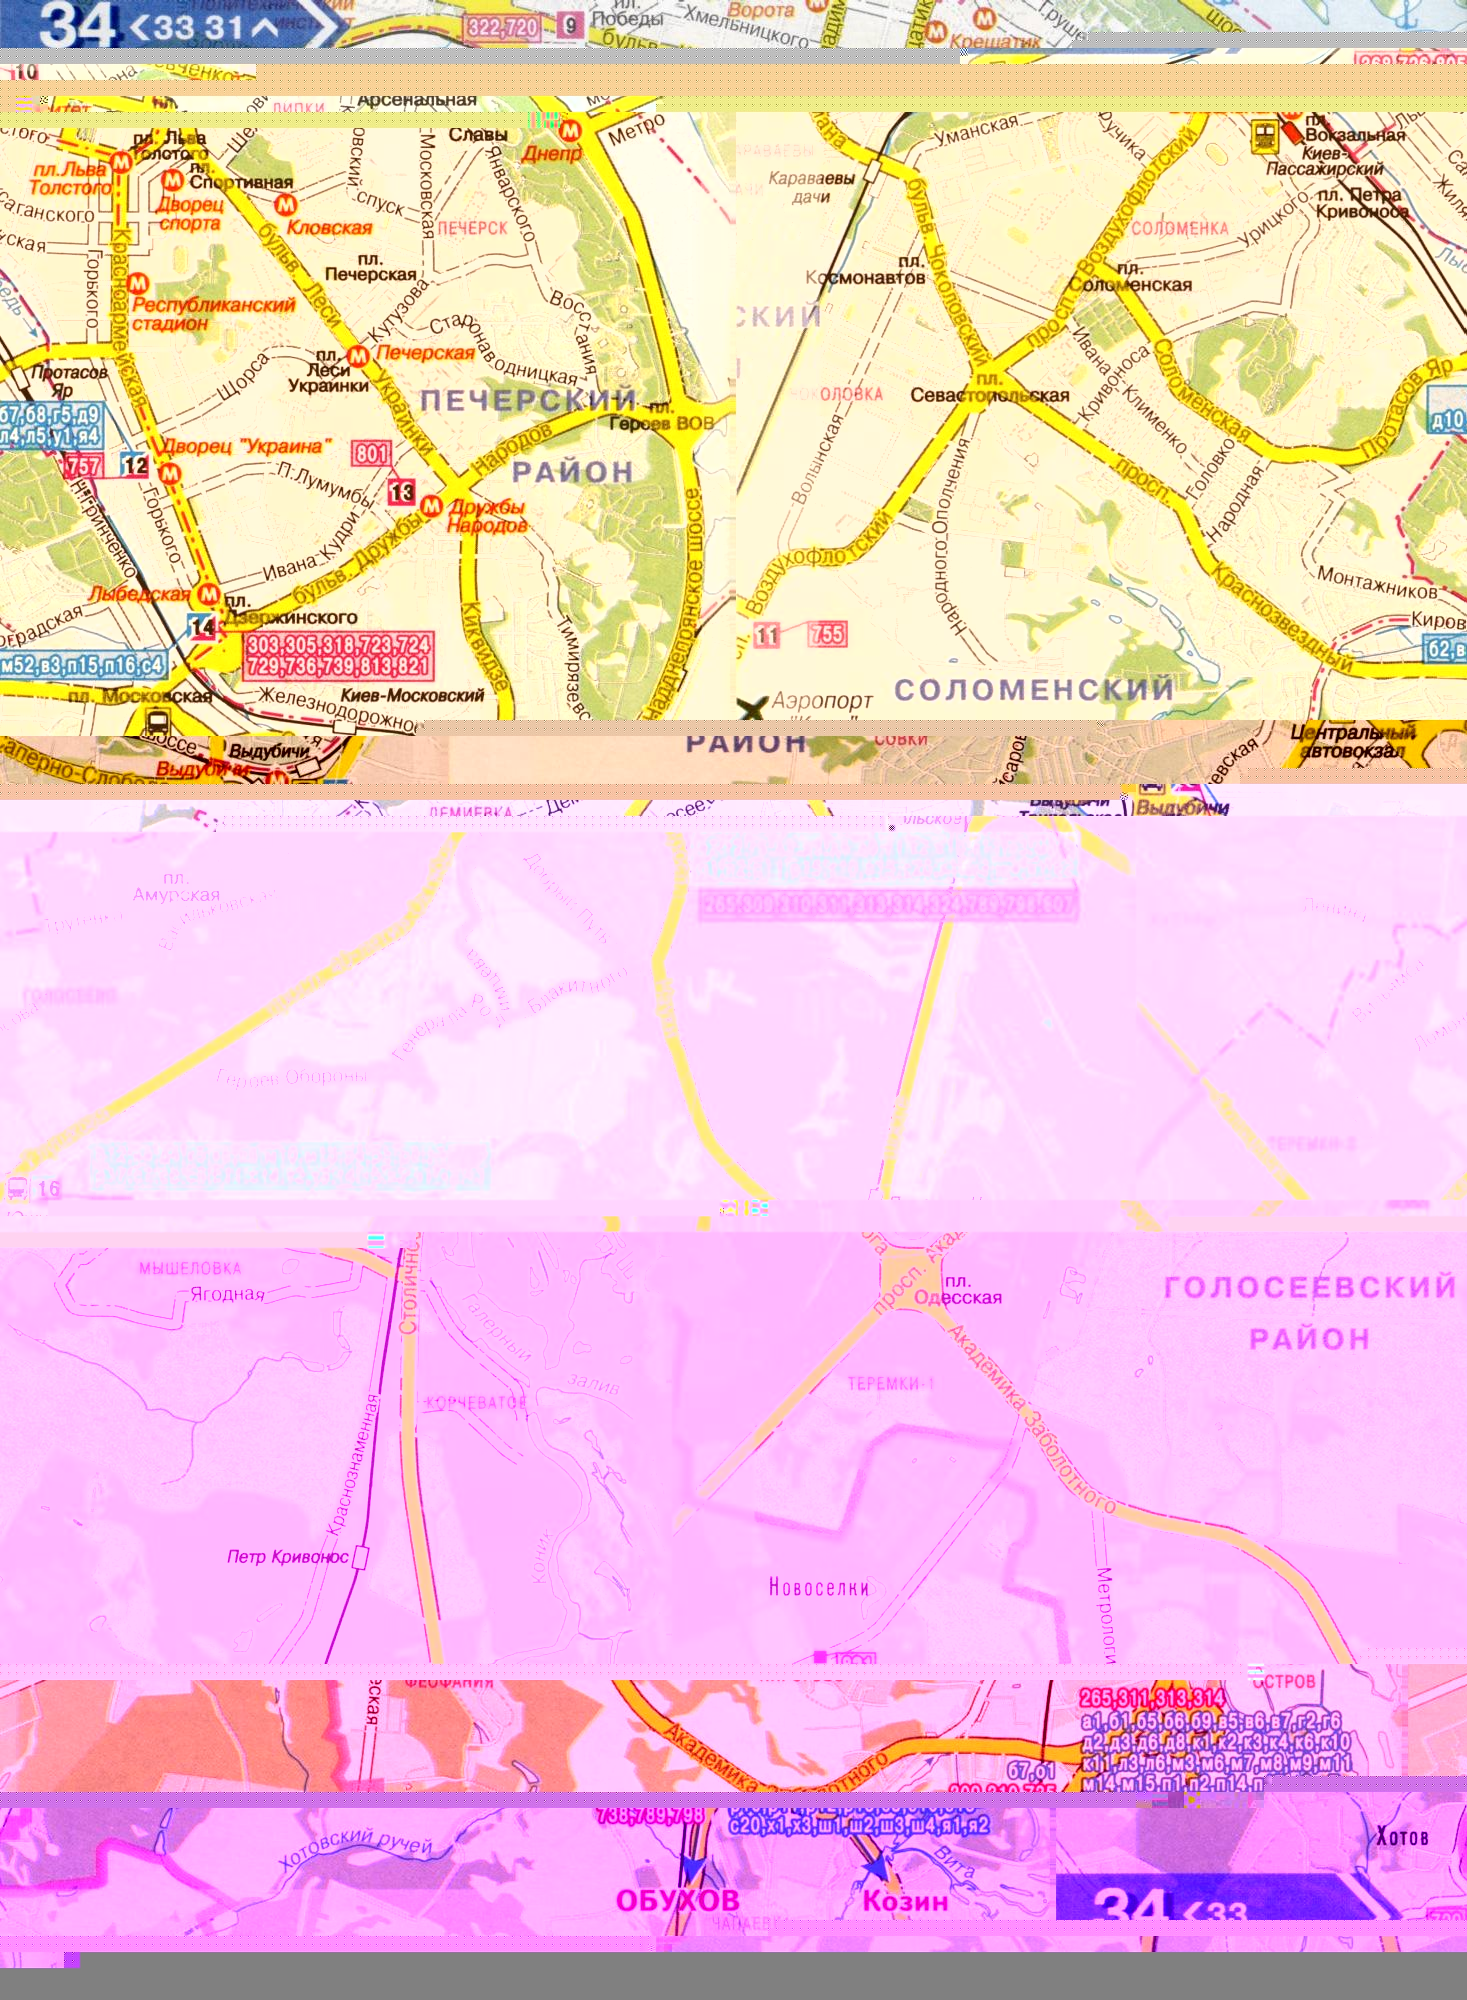 Карта Киева 1см-800м на 6 листах - основные автомобильные дороги города и окрестностей. Схема пригородного транспорта Киева. Скачать бесплатно